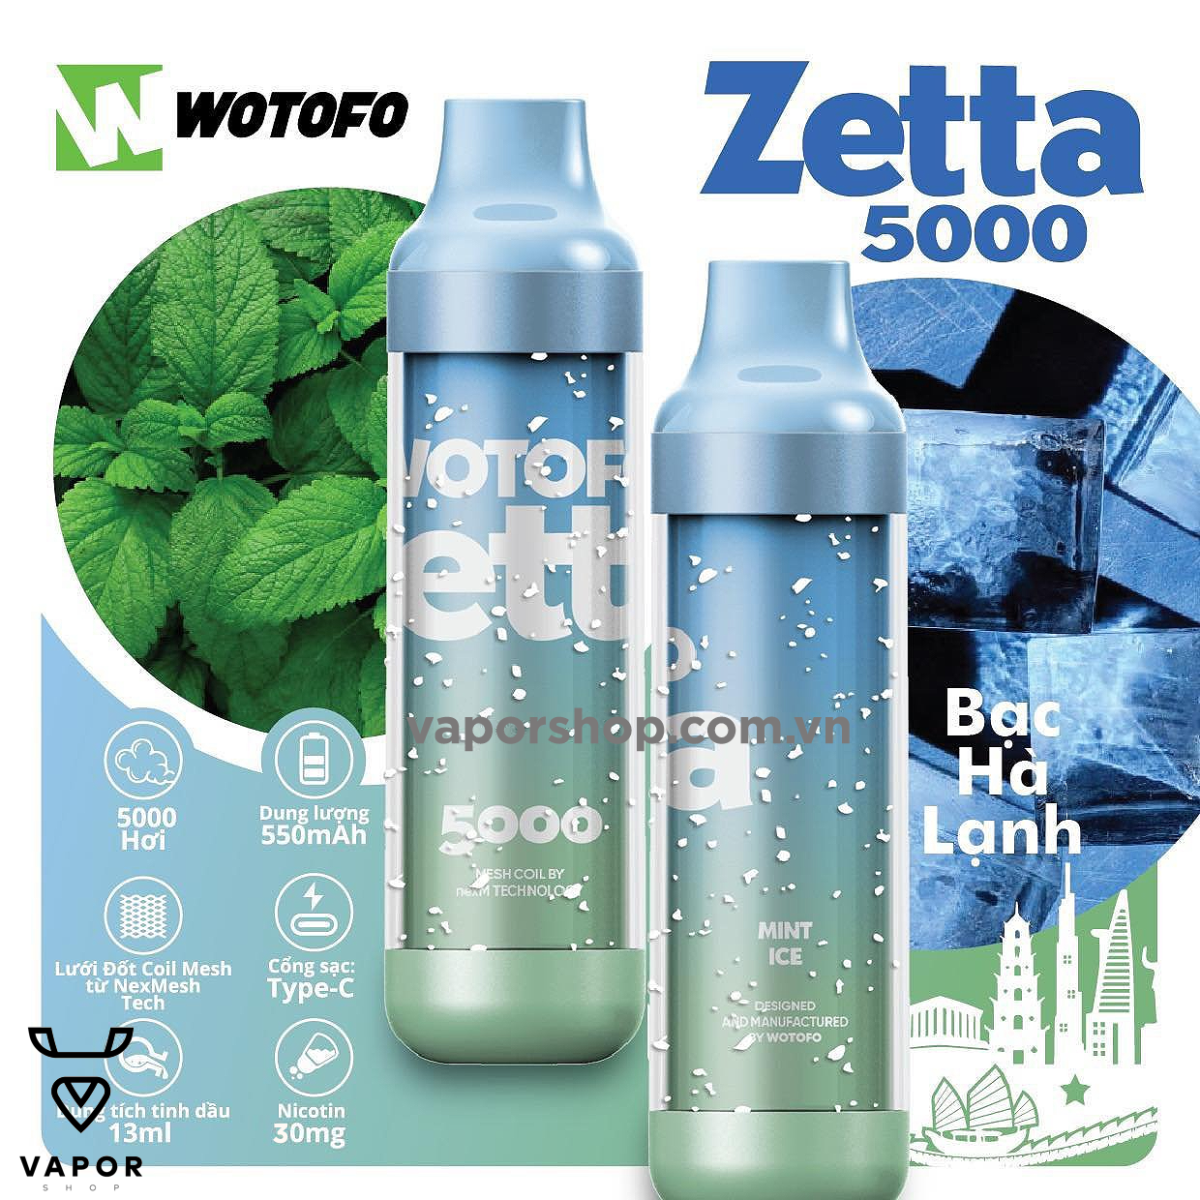 Wotofo Zetta 5000 puffs Mint Ice ( Bạc hà ) - Vape tinh dầu pod chính hãng - Cai thuốc lá không độc hại sức khỏe